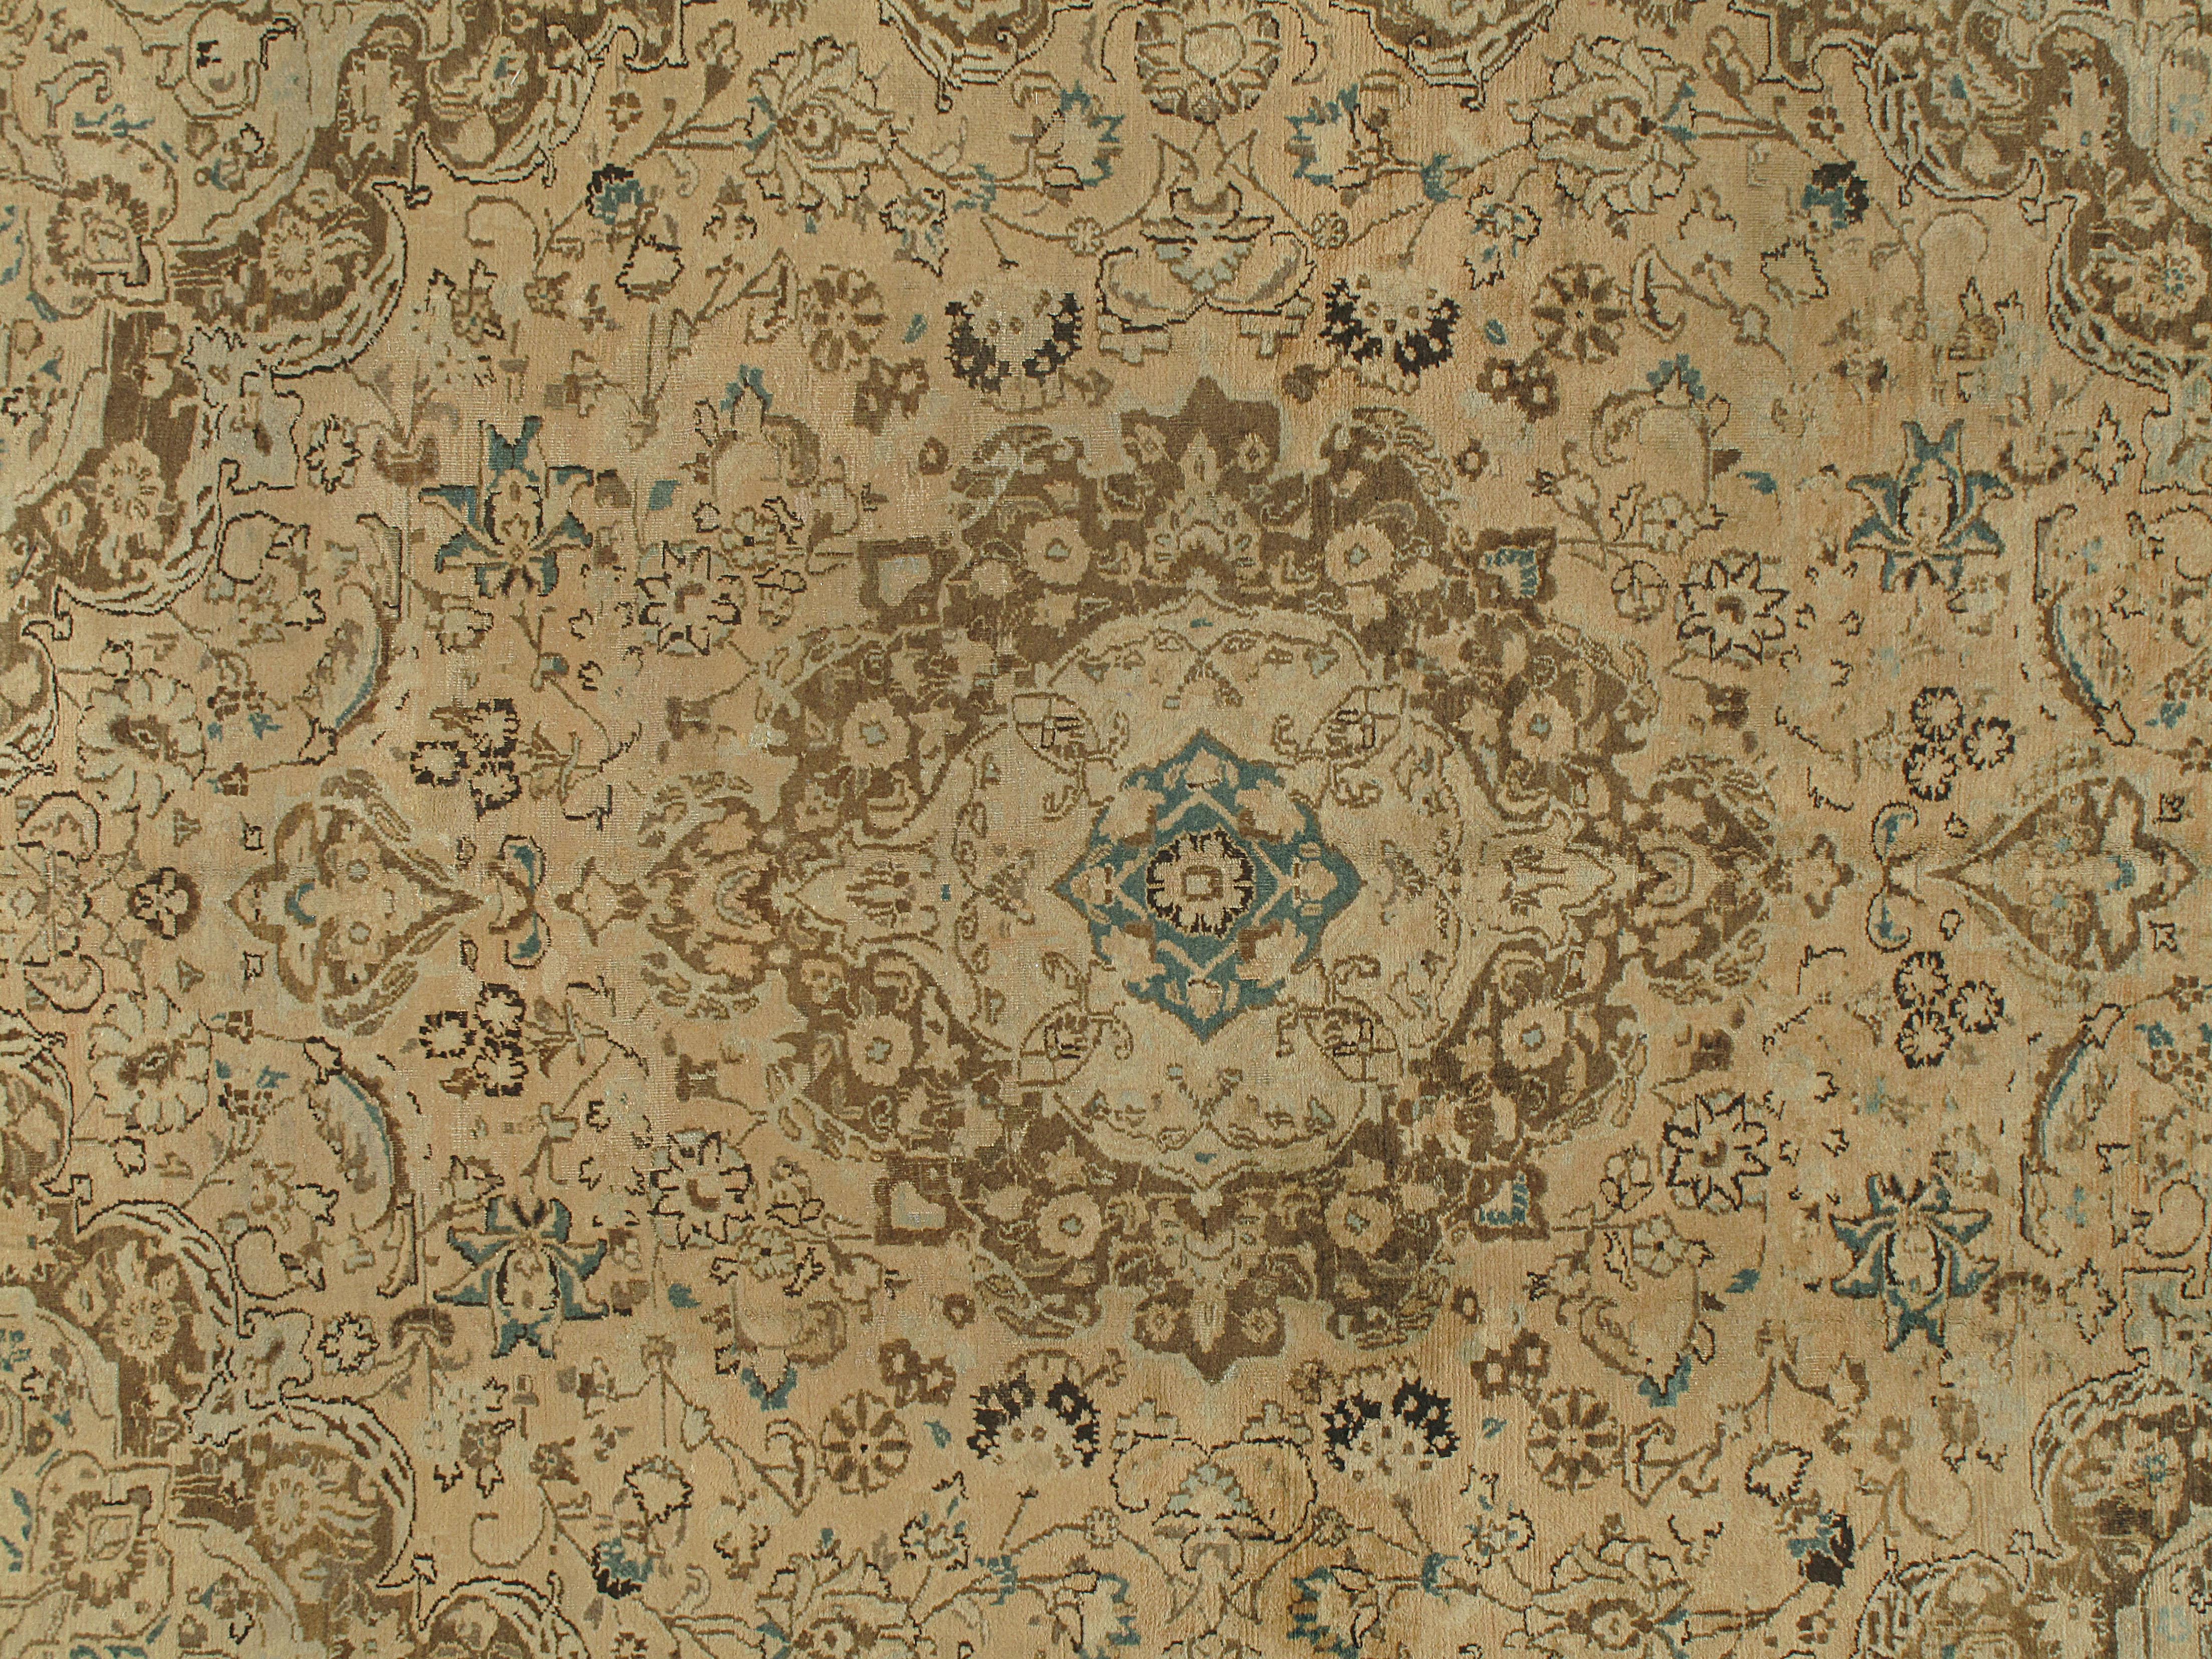 Vintage Persian Meshad Rug 8' x 10'. Dieser charmante Meshad-Teppich erfreut das Auge mit seinem geschwungenen Design und dem eleganten Medaillon in der Mitte. Das meisterhaft geflochtene Stück in Creme und Schokolade wird auf natürliche Weise zum